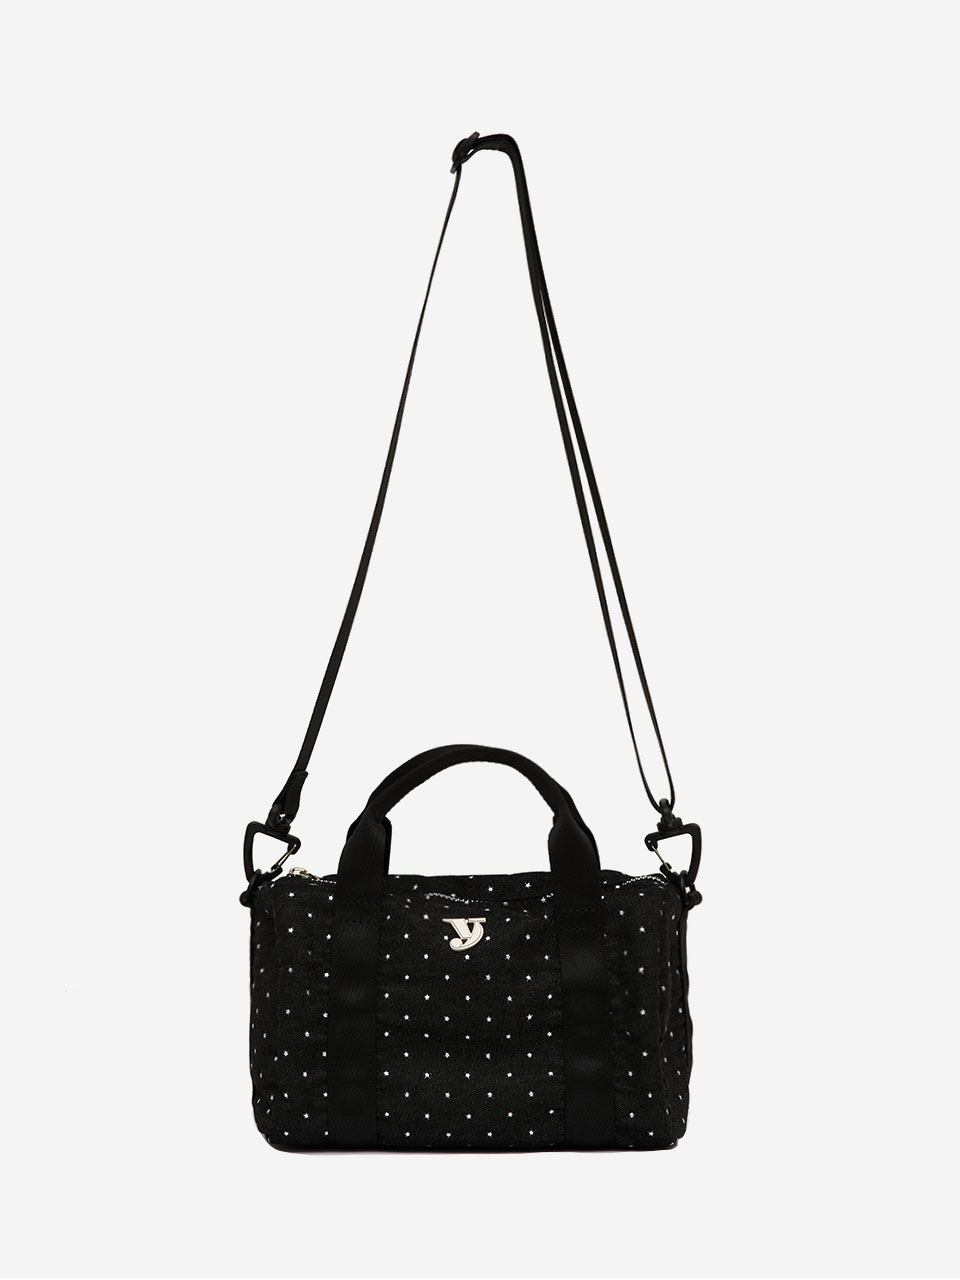 3/11 예약배송 mini duffle bag (star black)